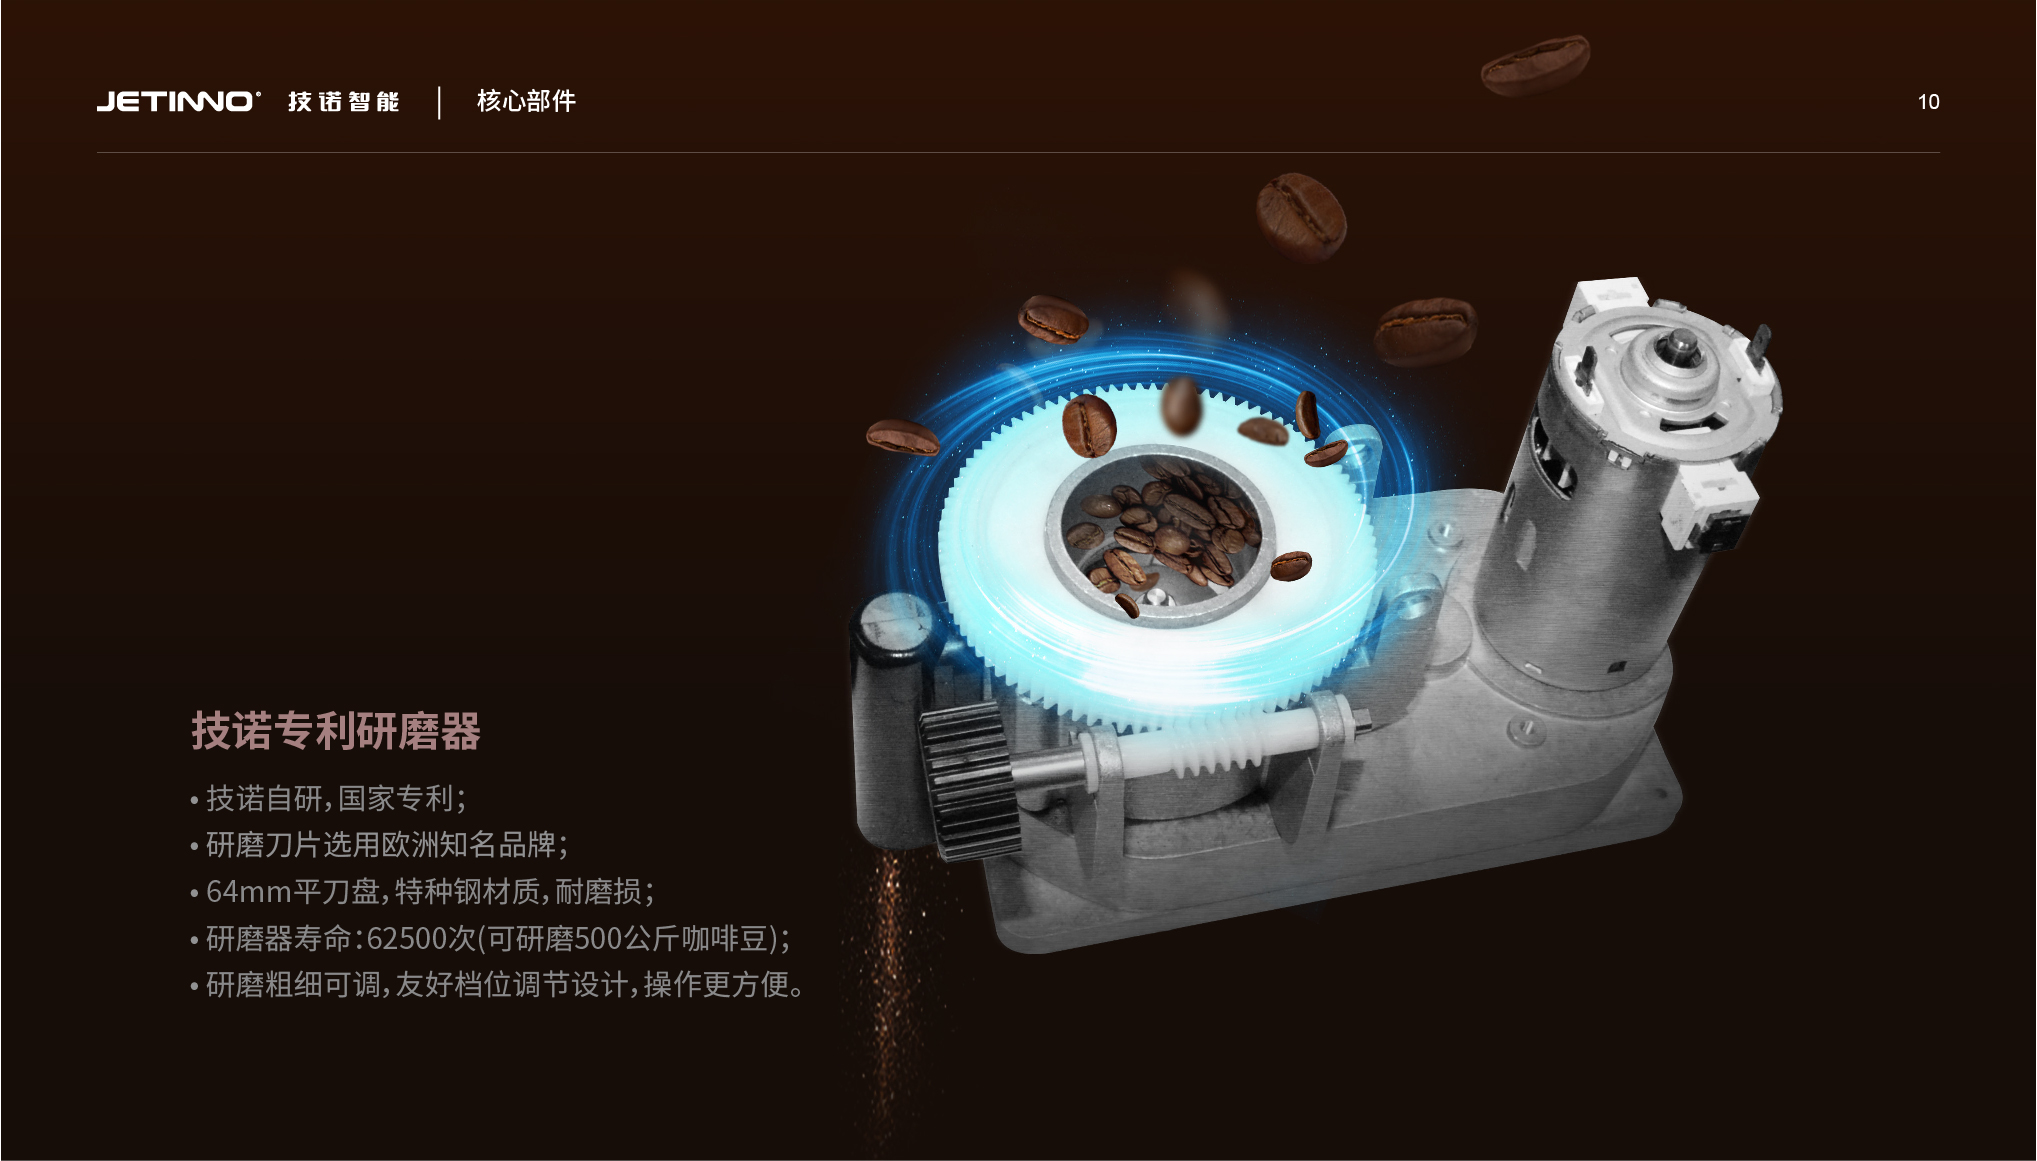 JL300 技诺全自动现磨咖啡自助贩卖机